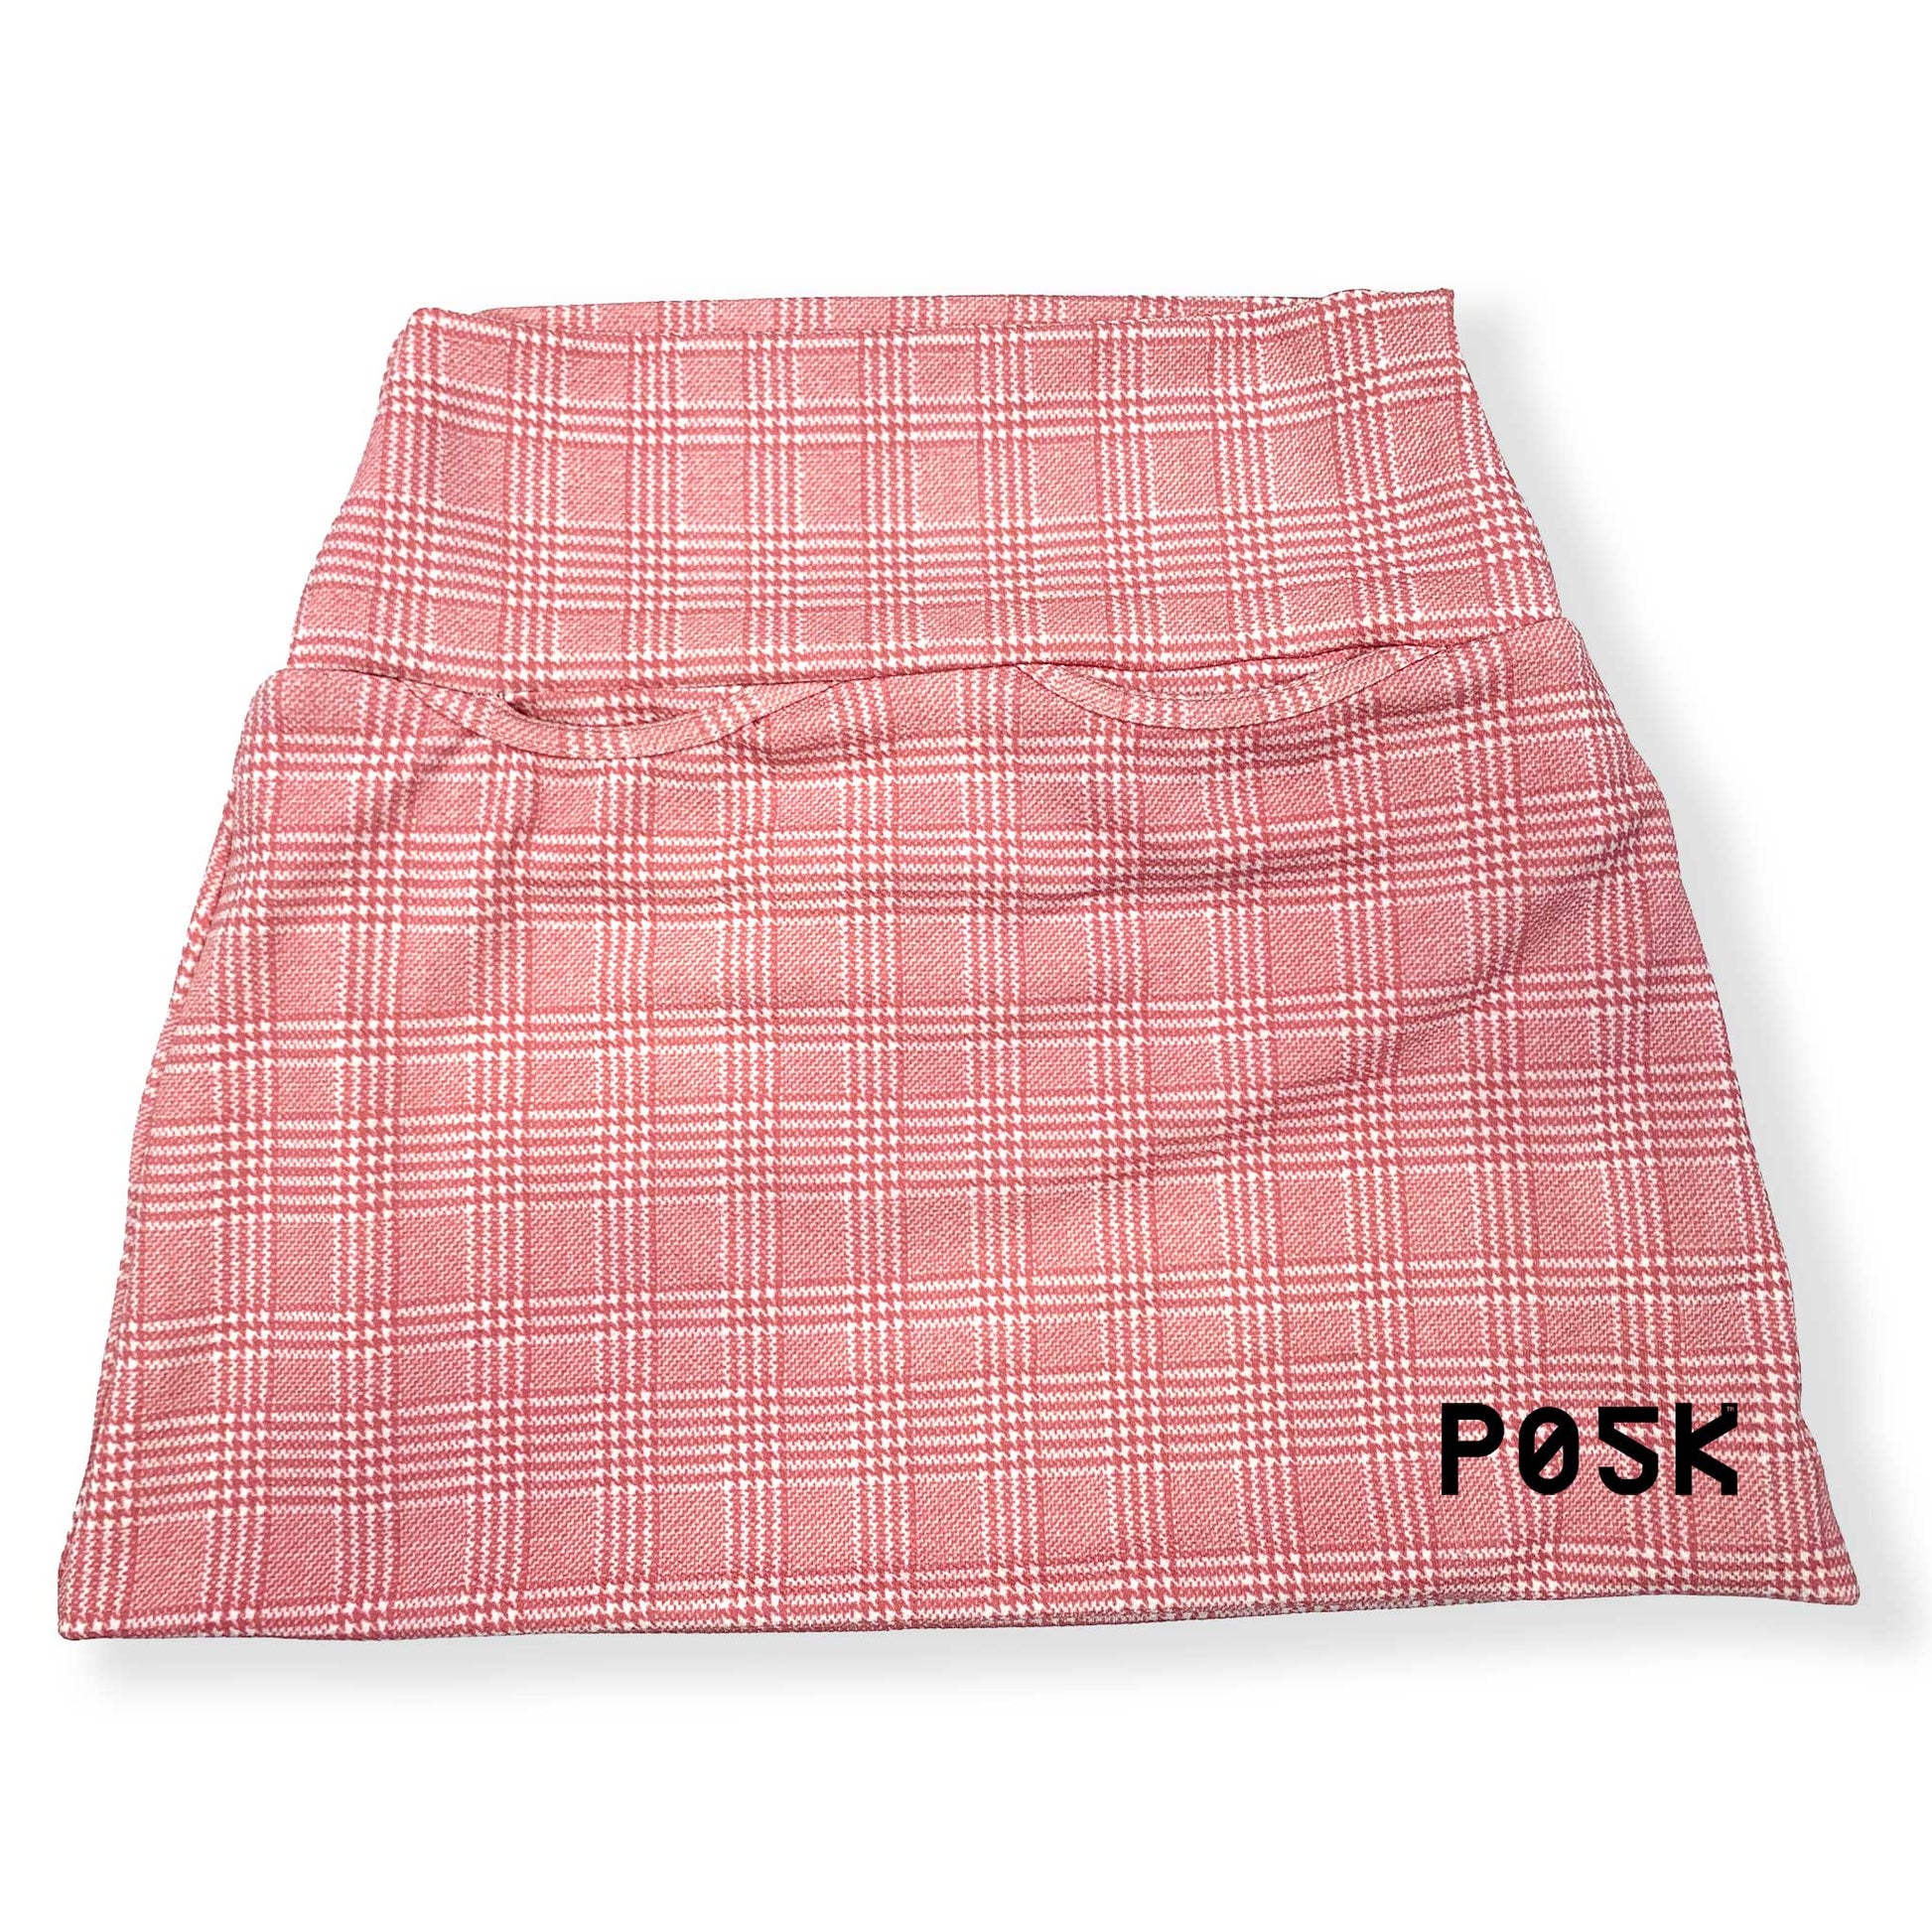 P05K™ | Pink Glen Plaid Scuba Crepe Micro Mini Pocket Skirt-Skirts-XS-Glen Plaid-Hagsters